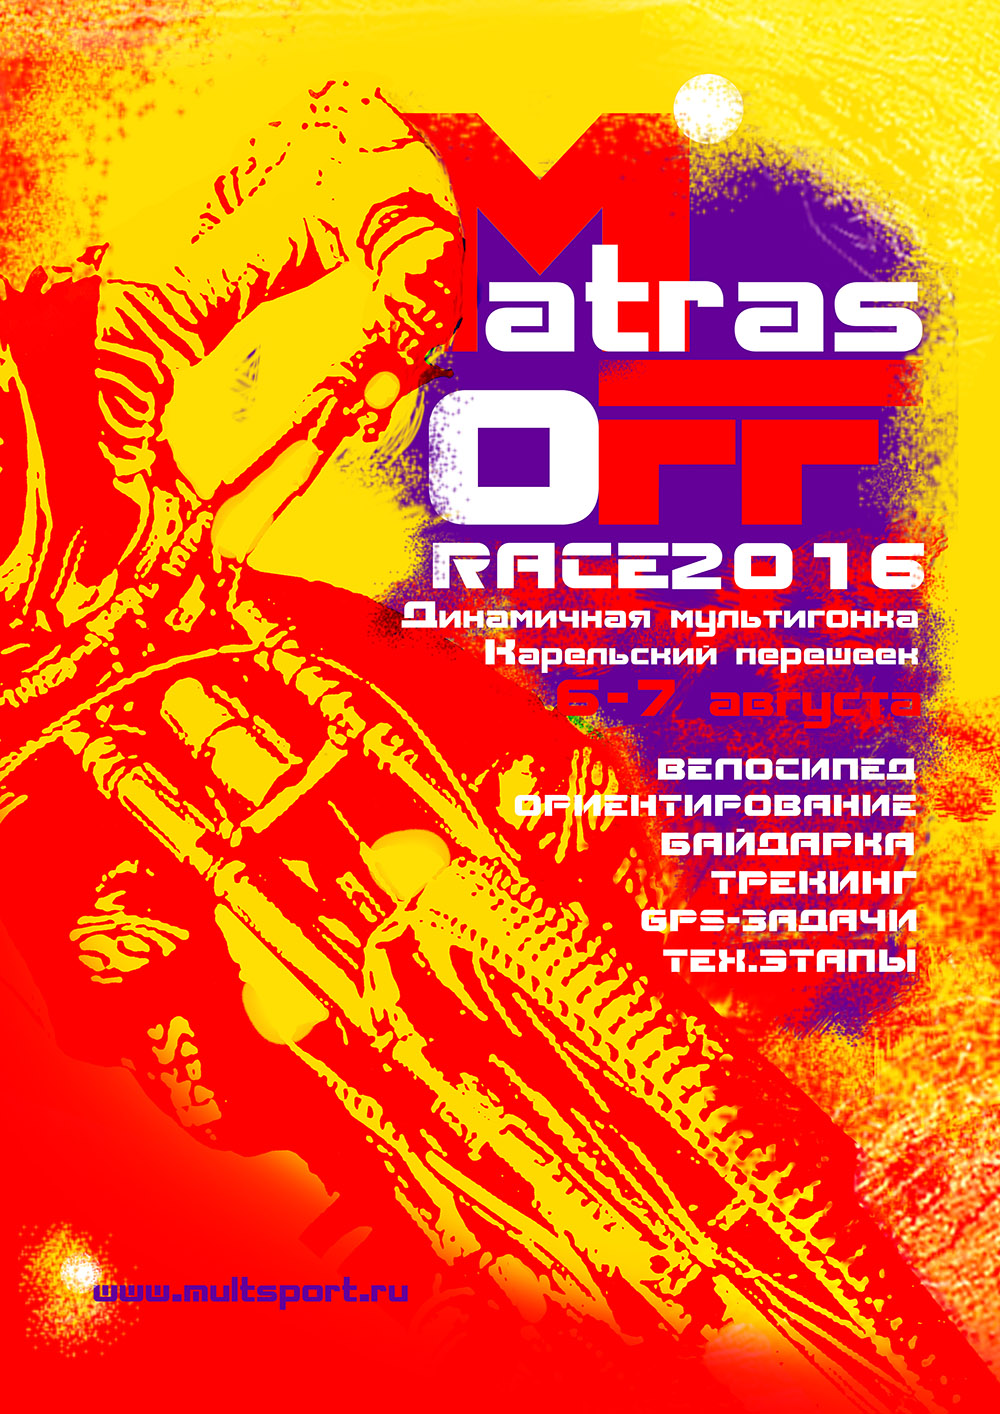 Положение о приключенческой гонке MatrasOFF Race - 2016